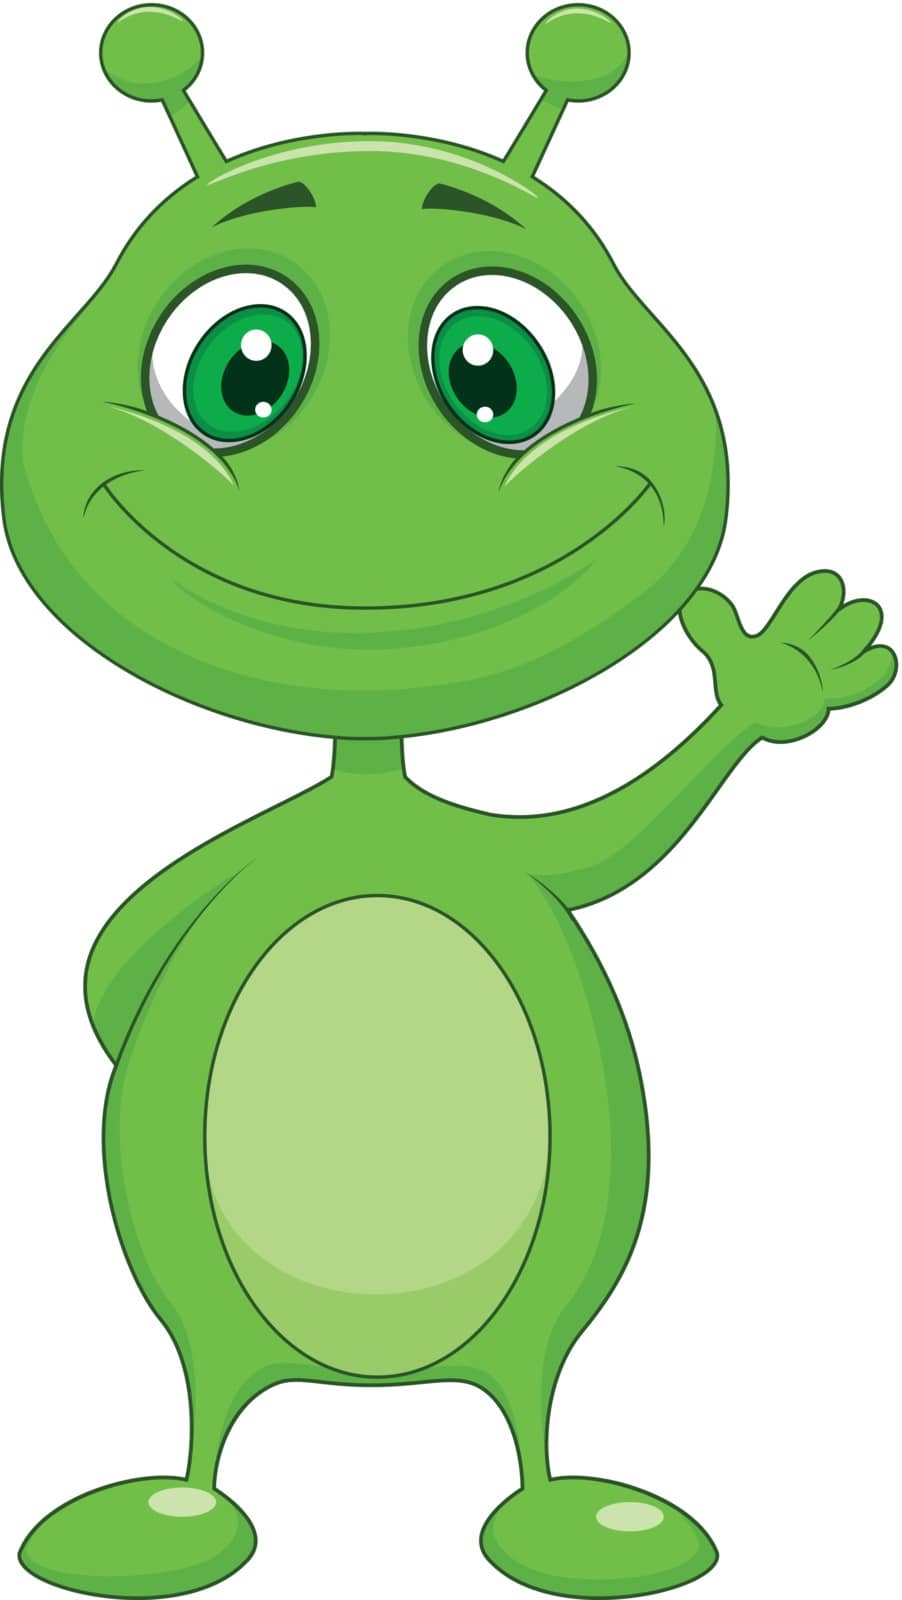 Vector illustration of Cute green alien cartoon waving